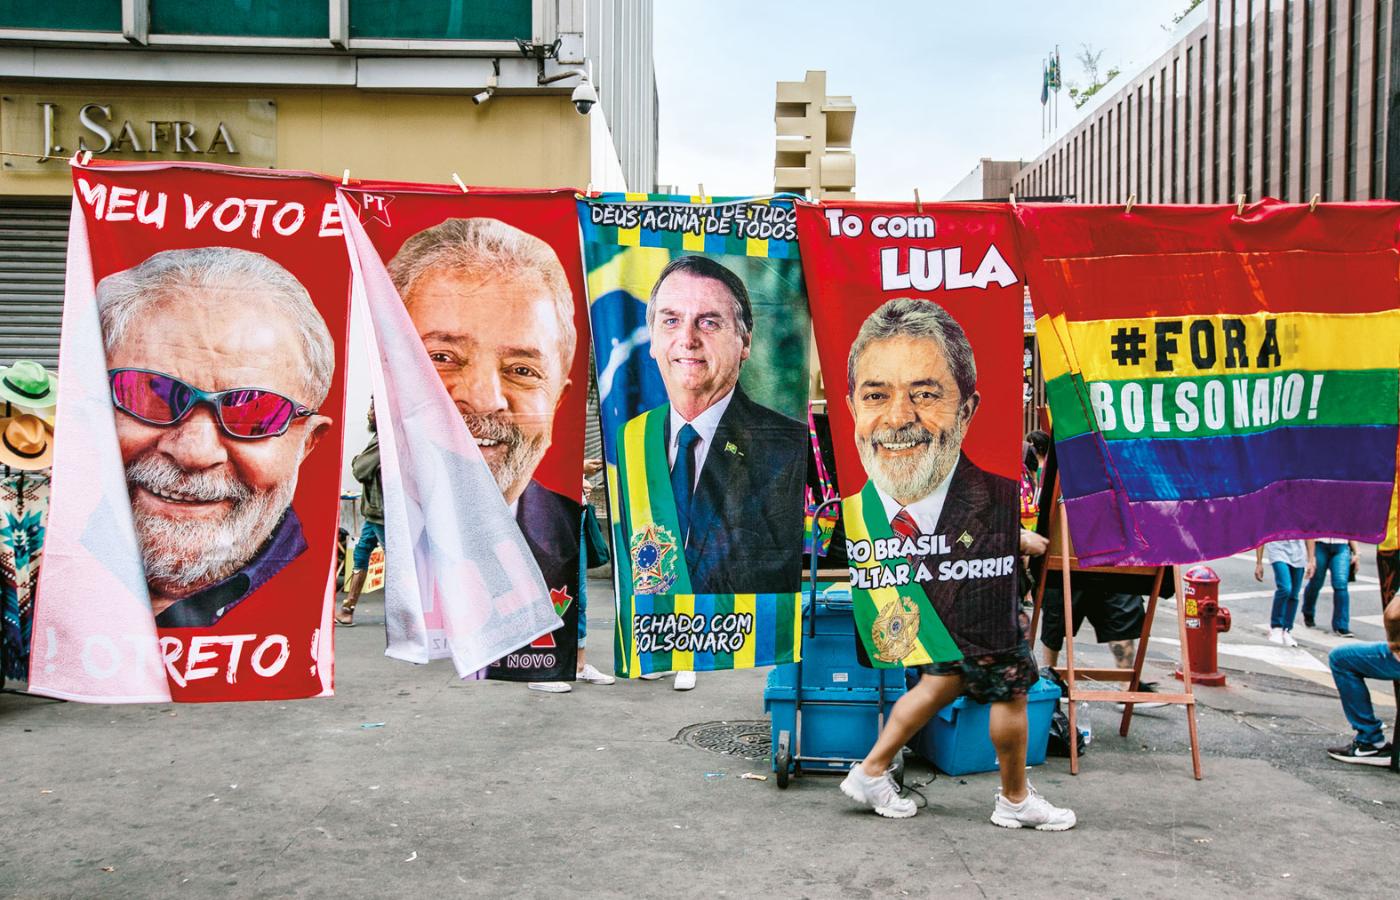 Bolsonaro przegrał z kandydatem lewicy Lulą da Silva i… oddał władzę bez większych dąsów.